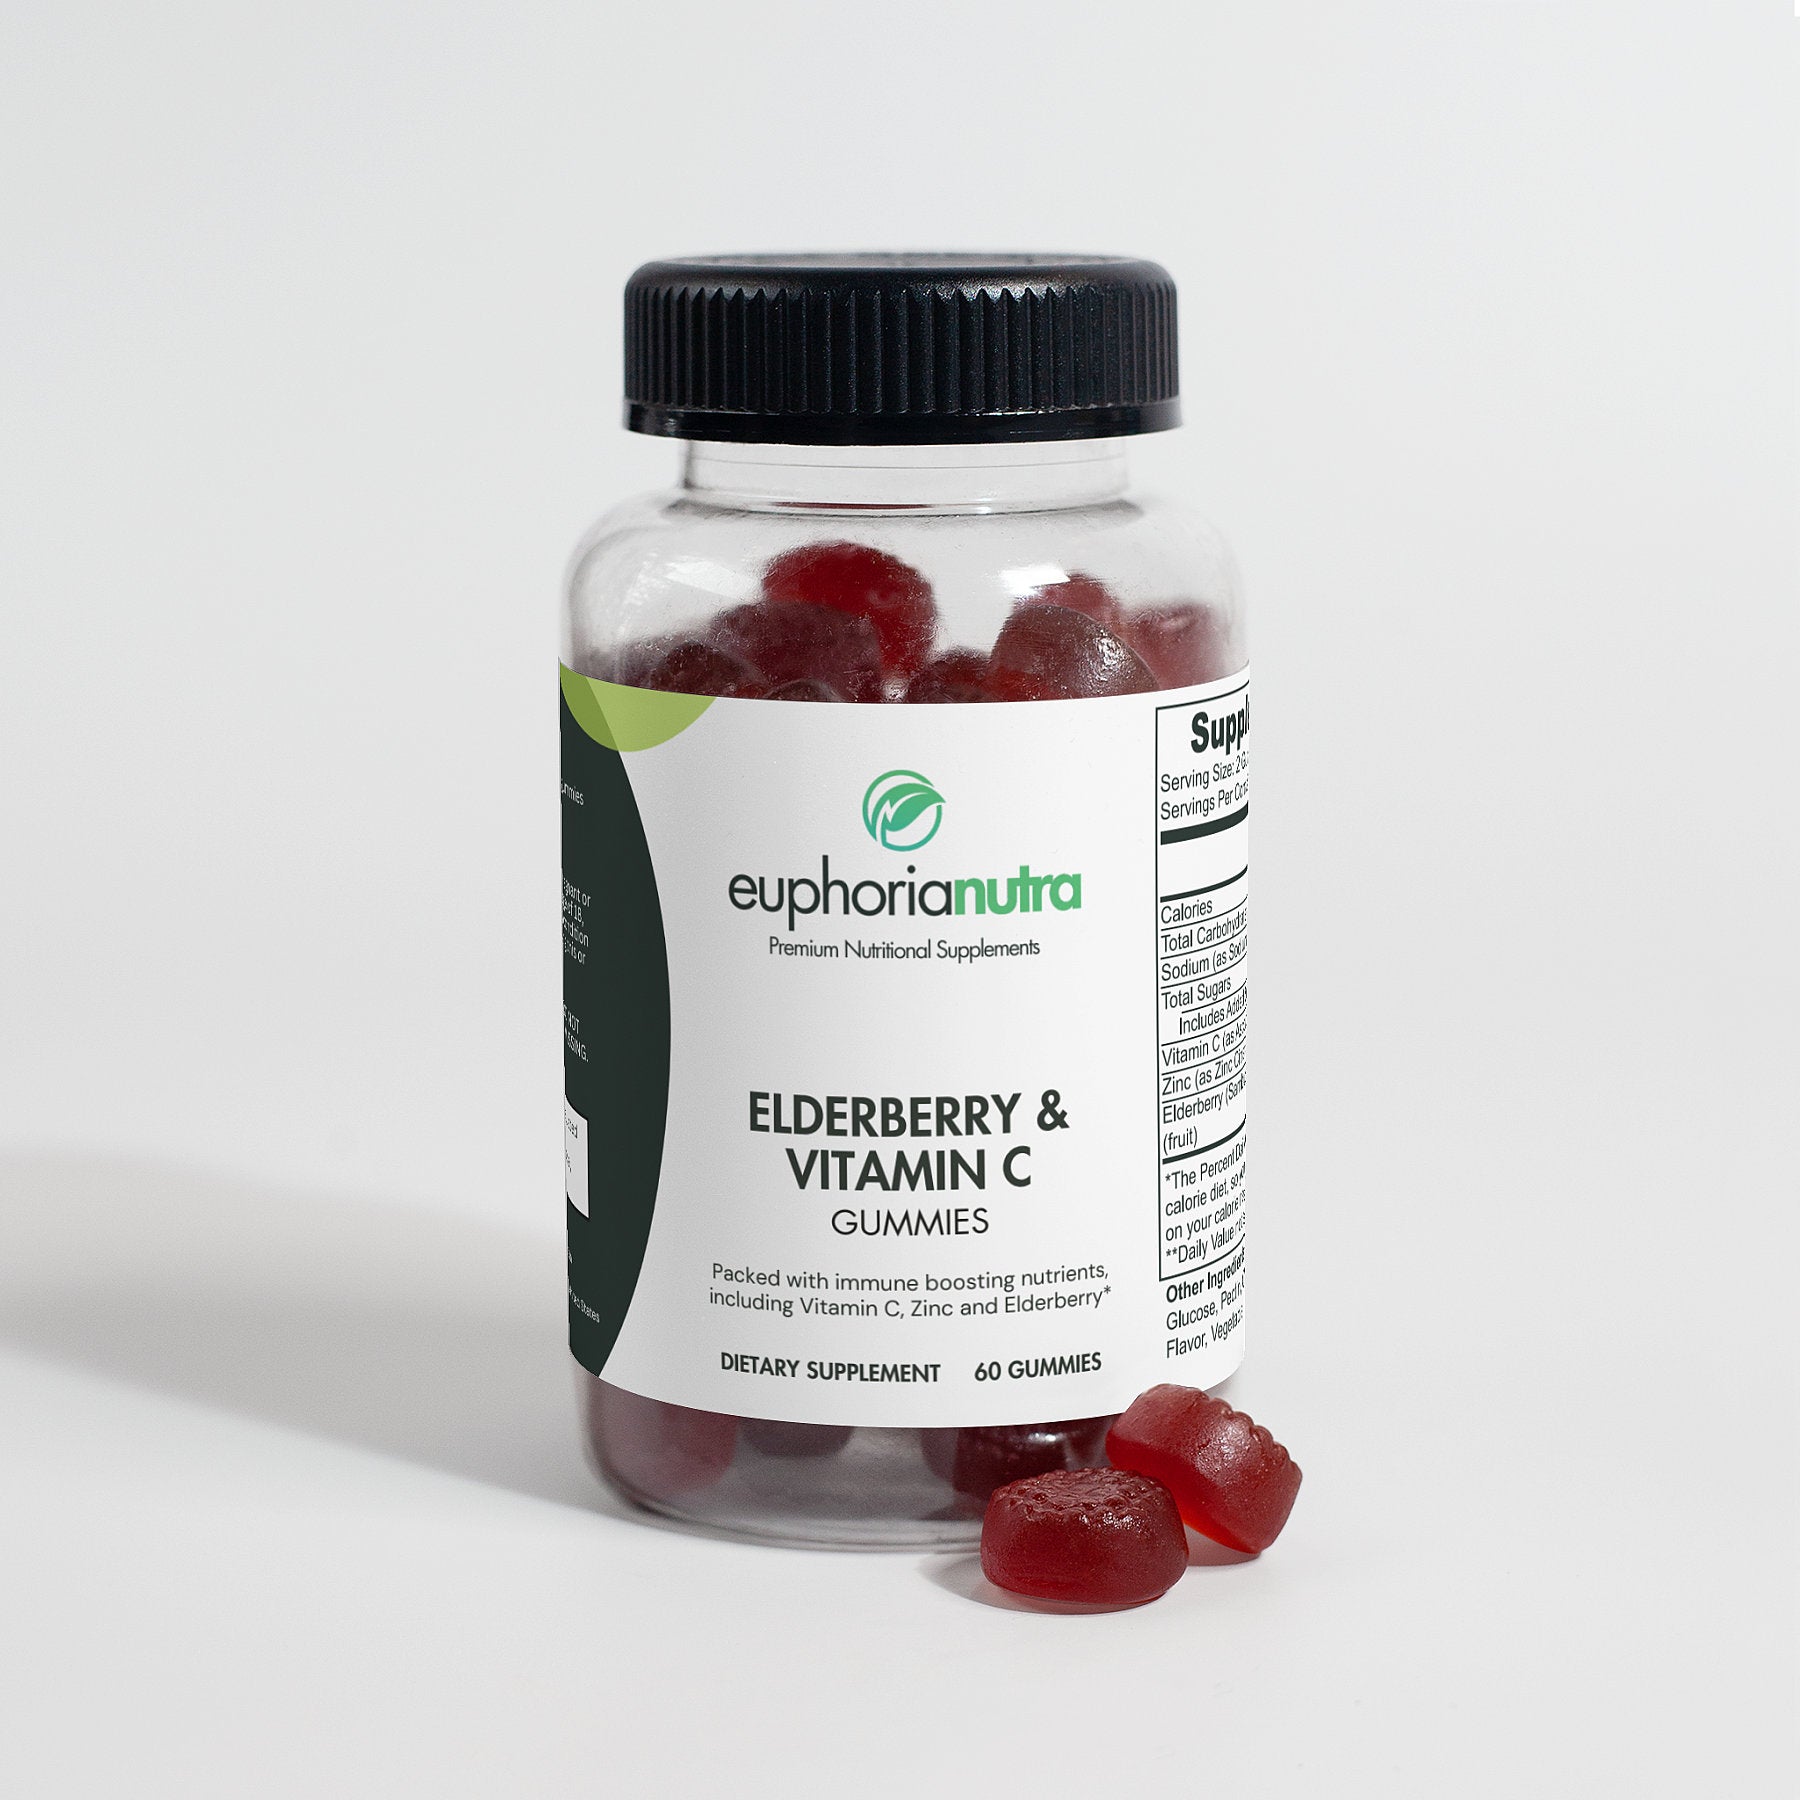 Elderberry-Vitamin-C-Gummies-euphorianutra